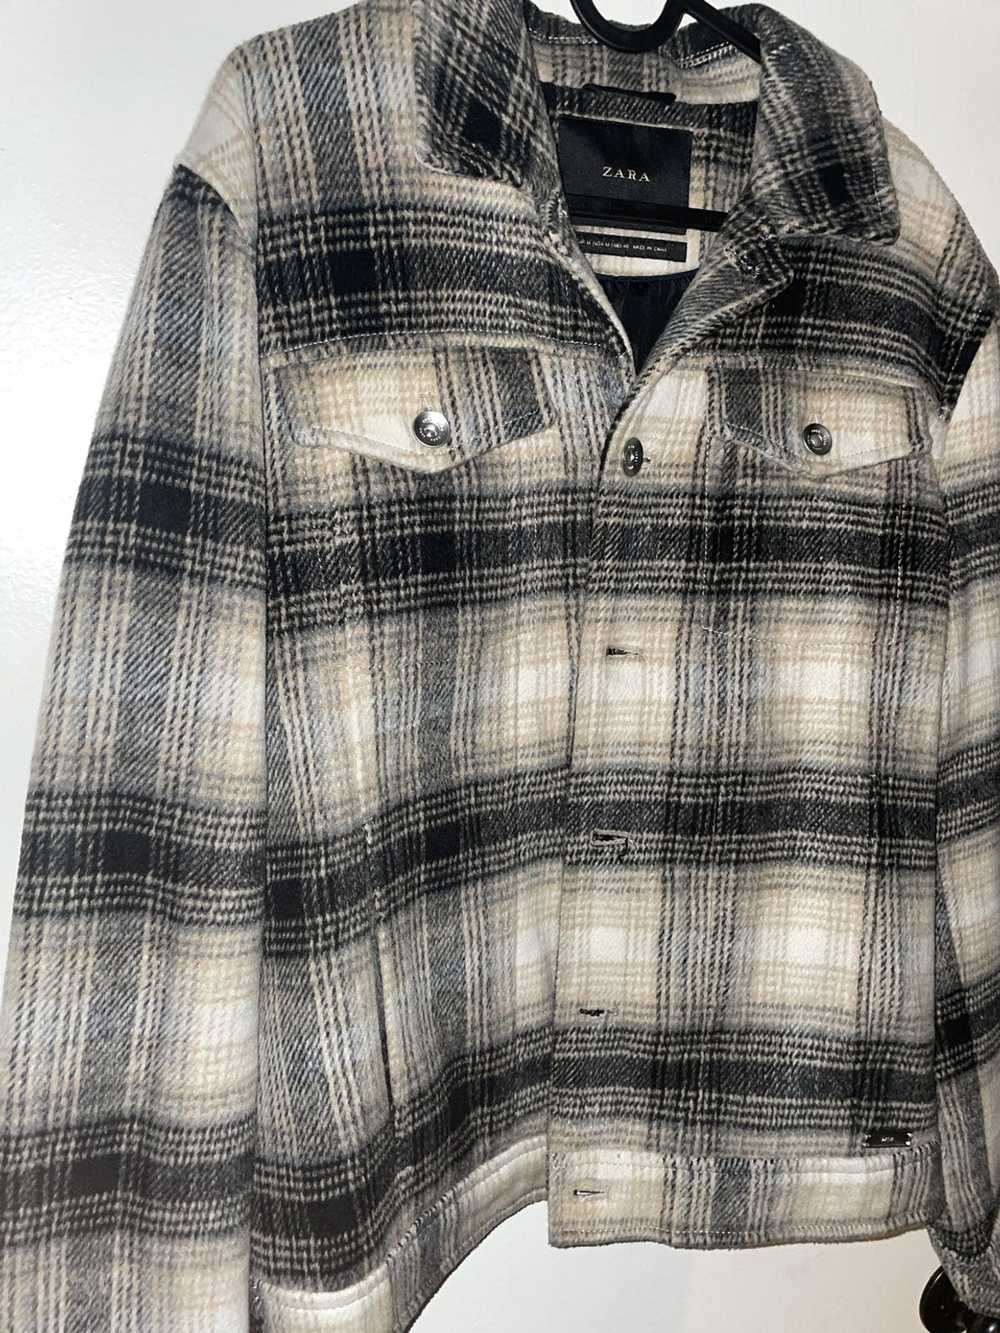 Zara Checkered cropped style jacket - image 2